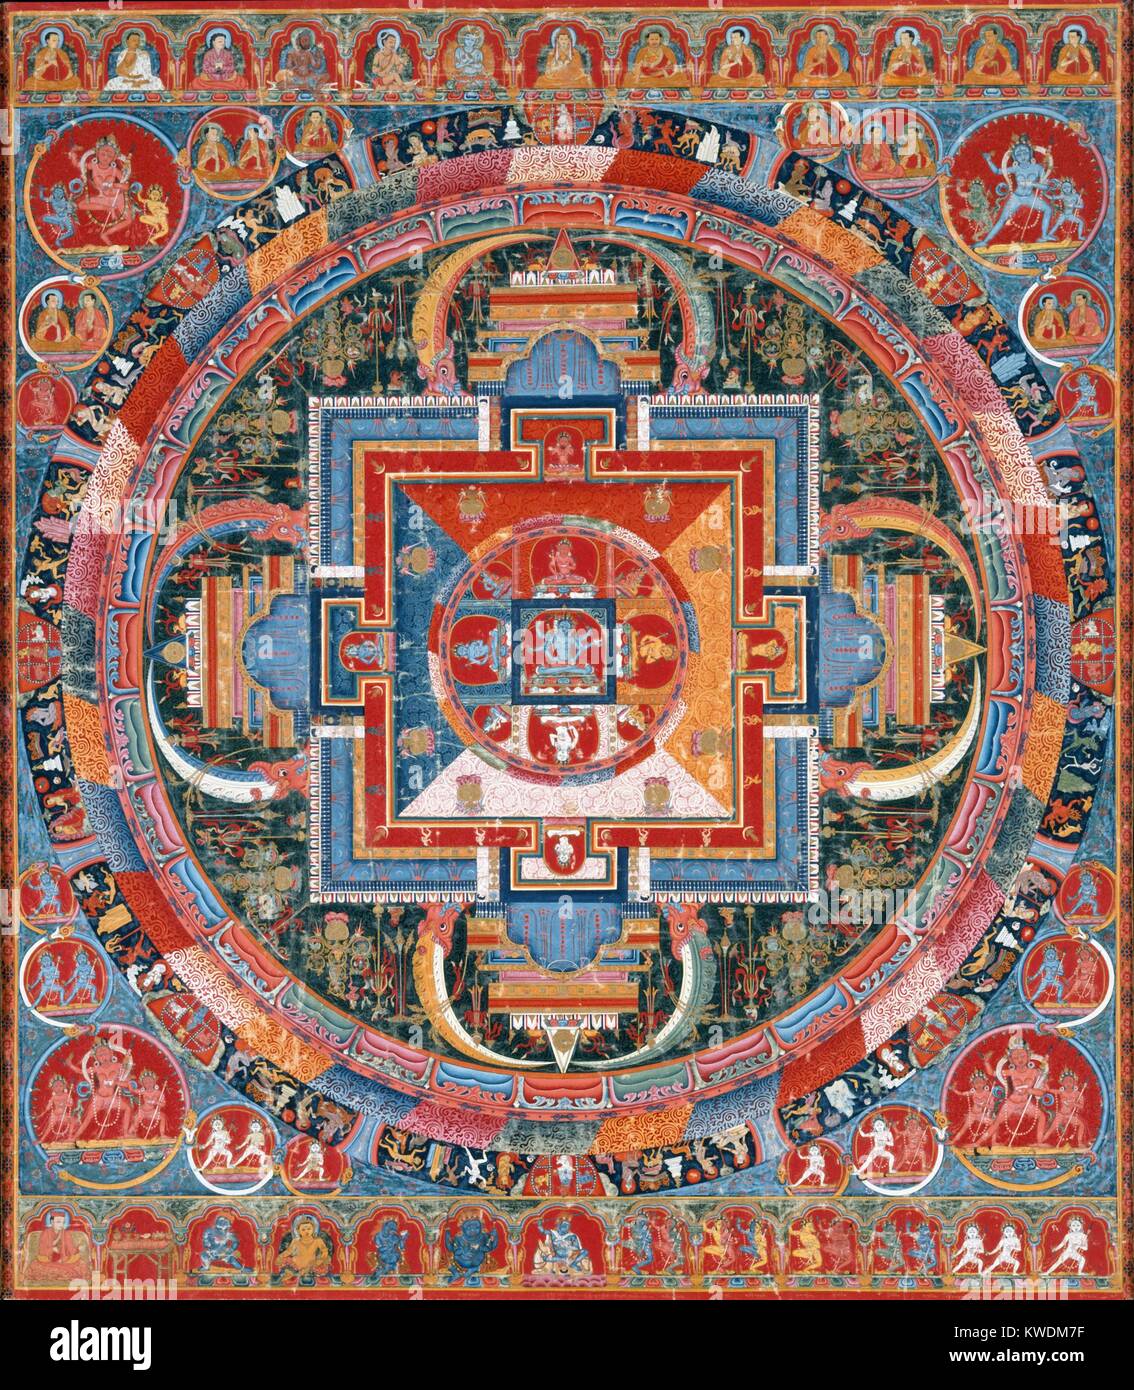 MANDELA von JNANADAKINI, Tibet, buddhistische, 1370-1400, Malerei, Staupe auf Baumwolle. Die Zentrale von sechs Bewaffneten Devi (Göttin), Jnanadakini, wird von acht Emanationen des Devi umgeben, die mit den Farben der vier Quadranten des Mandala entsprechen. Der tangka ist bevölkert mit vielen Zahlen: Gottheiten, Lamas, Mönche dakinis und Mahasiddhas (BSLOC 2017 16 14) Stockfoto